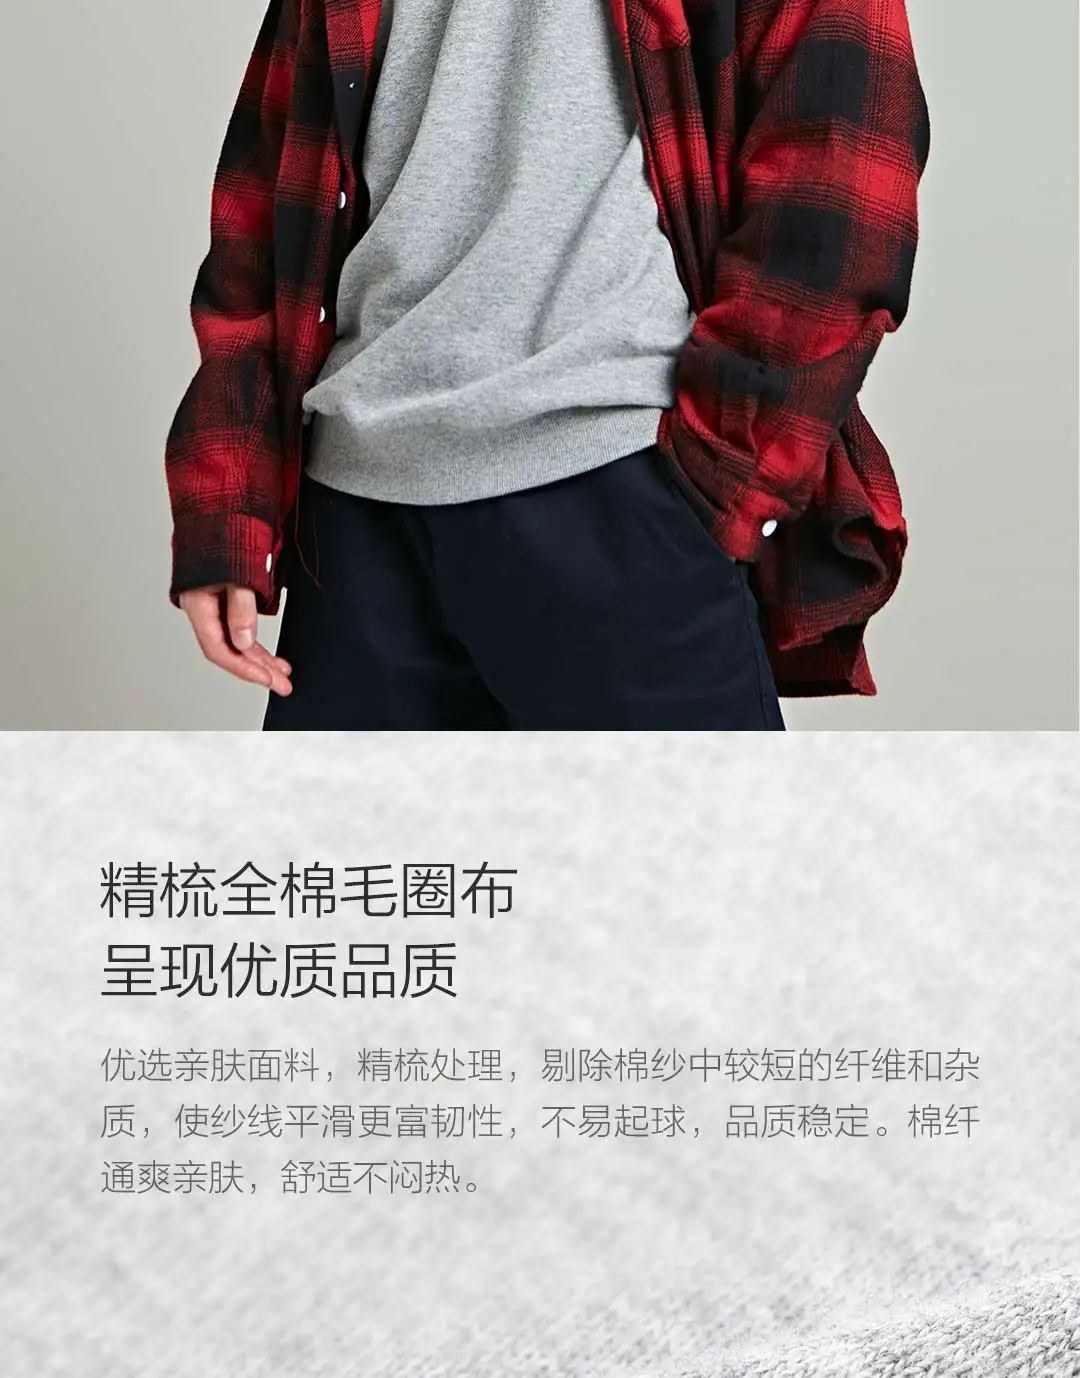 5 цветов Xiaomi Mijia MITOWNLIFE классический свитер с круглым вырезом из чесаного хлопка мягкий освежающий легко брать